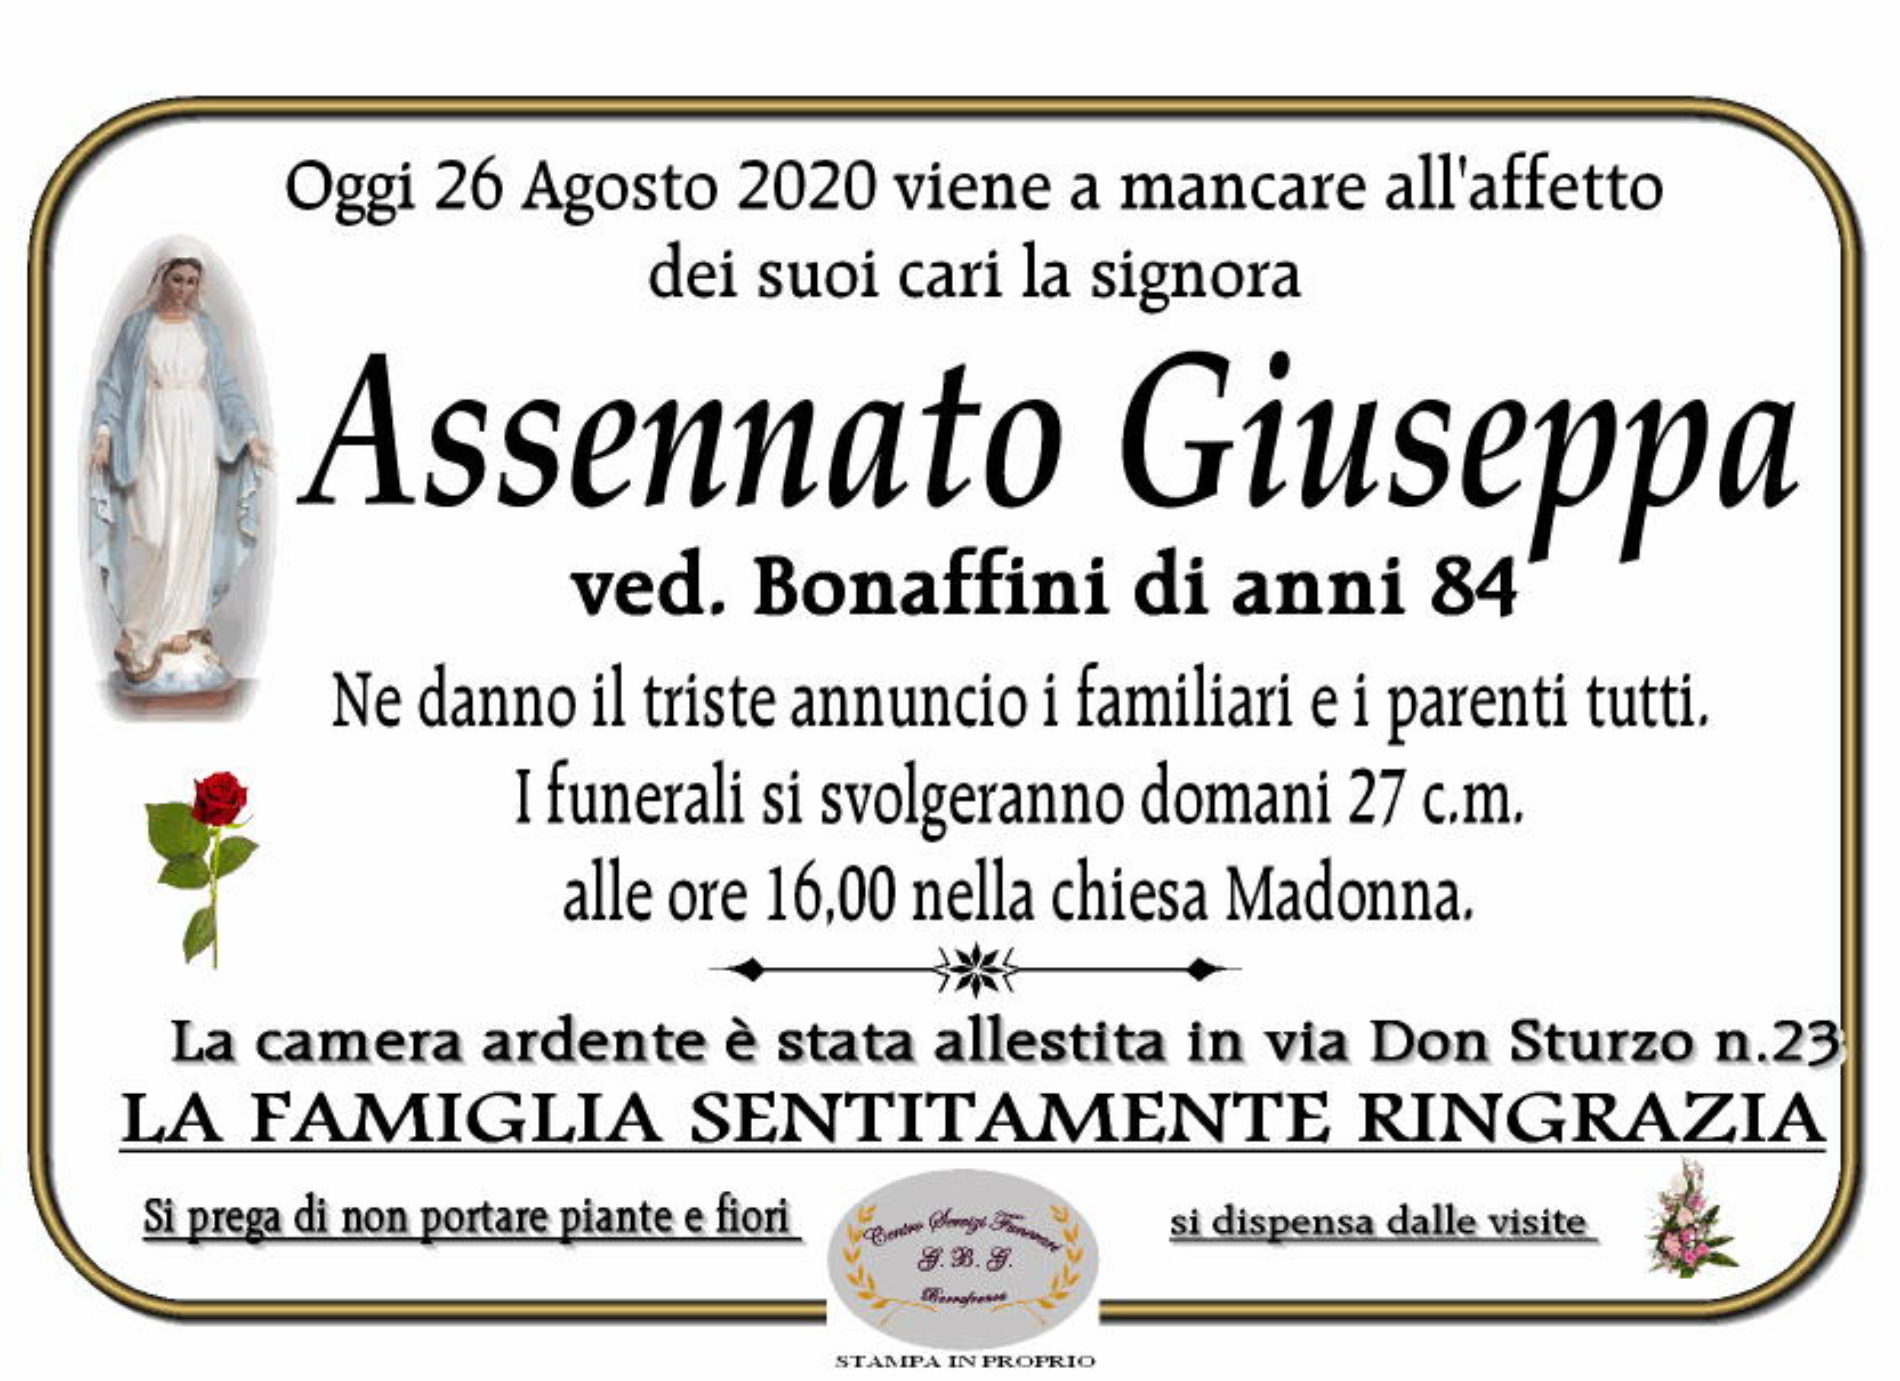 Annuncio Centro servizi funerari G.B.G Assennato Giuseppa ved Bonaffini anni 84